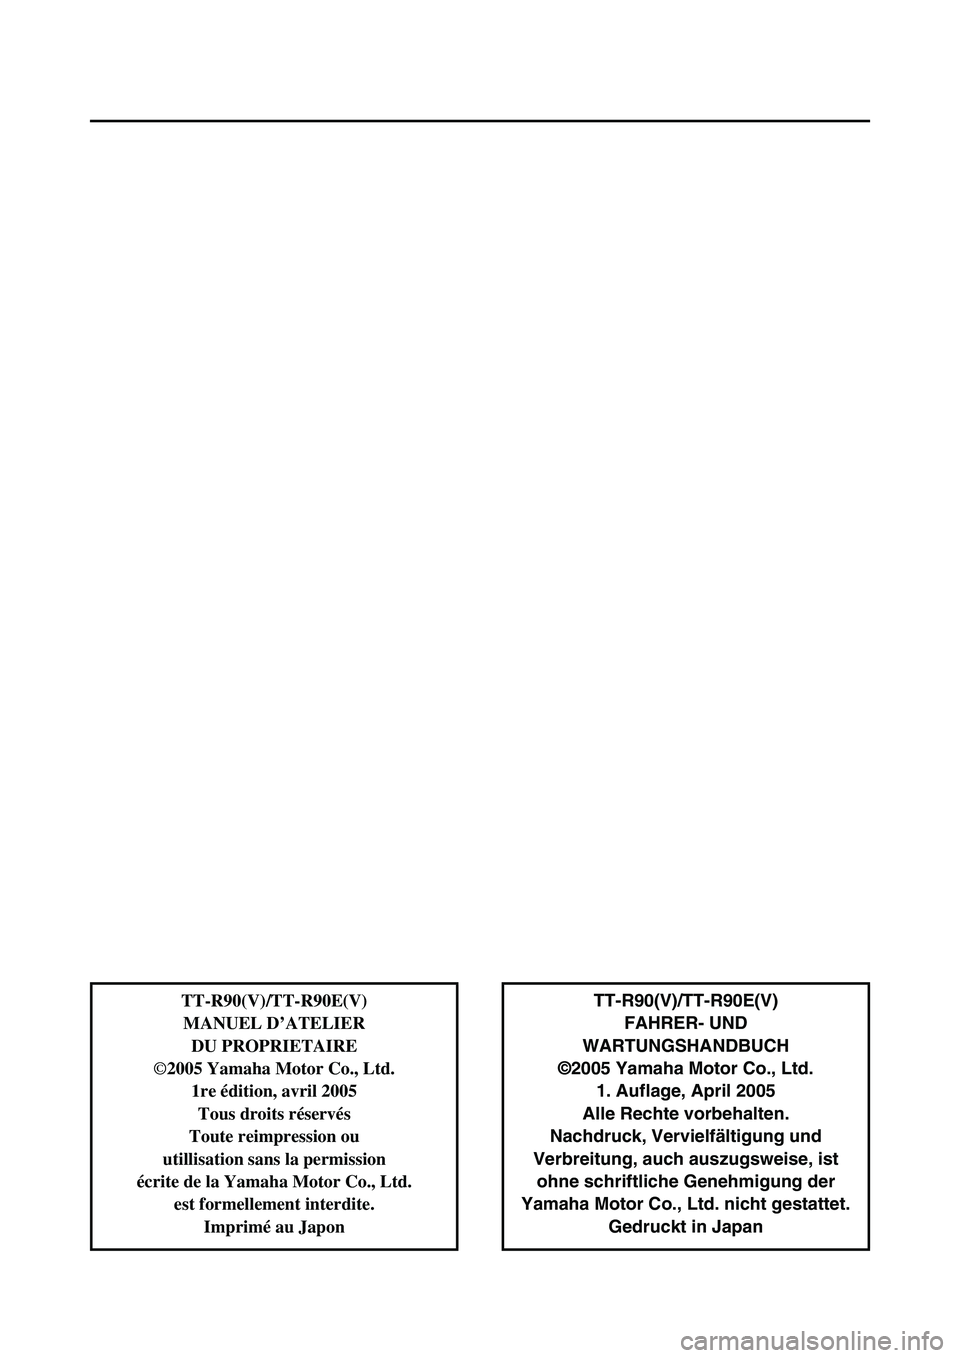 YAMAHA TTR90 2006  Notices Demploi (in French) TT-R90(V)/TT-R90E(V)
FAHRER- UND 
WARTUNGSHANDBUCH
©2005 Yamaha Motor Co., Ltd.
1. Auflage, April 2005
Alle Rechte vorbehalten.
Nachdruck, Vervielfältigung und
Verbreitung, auch auszugsweise, ist
oh